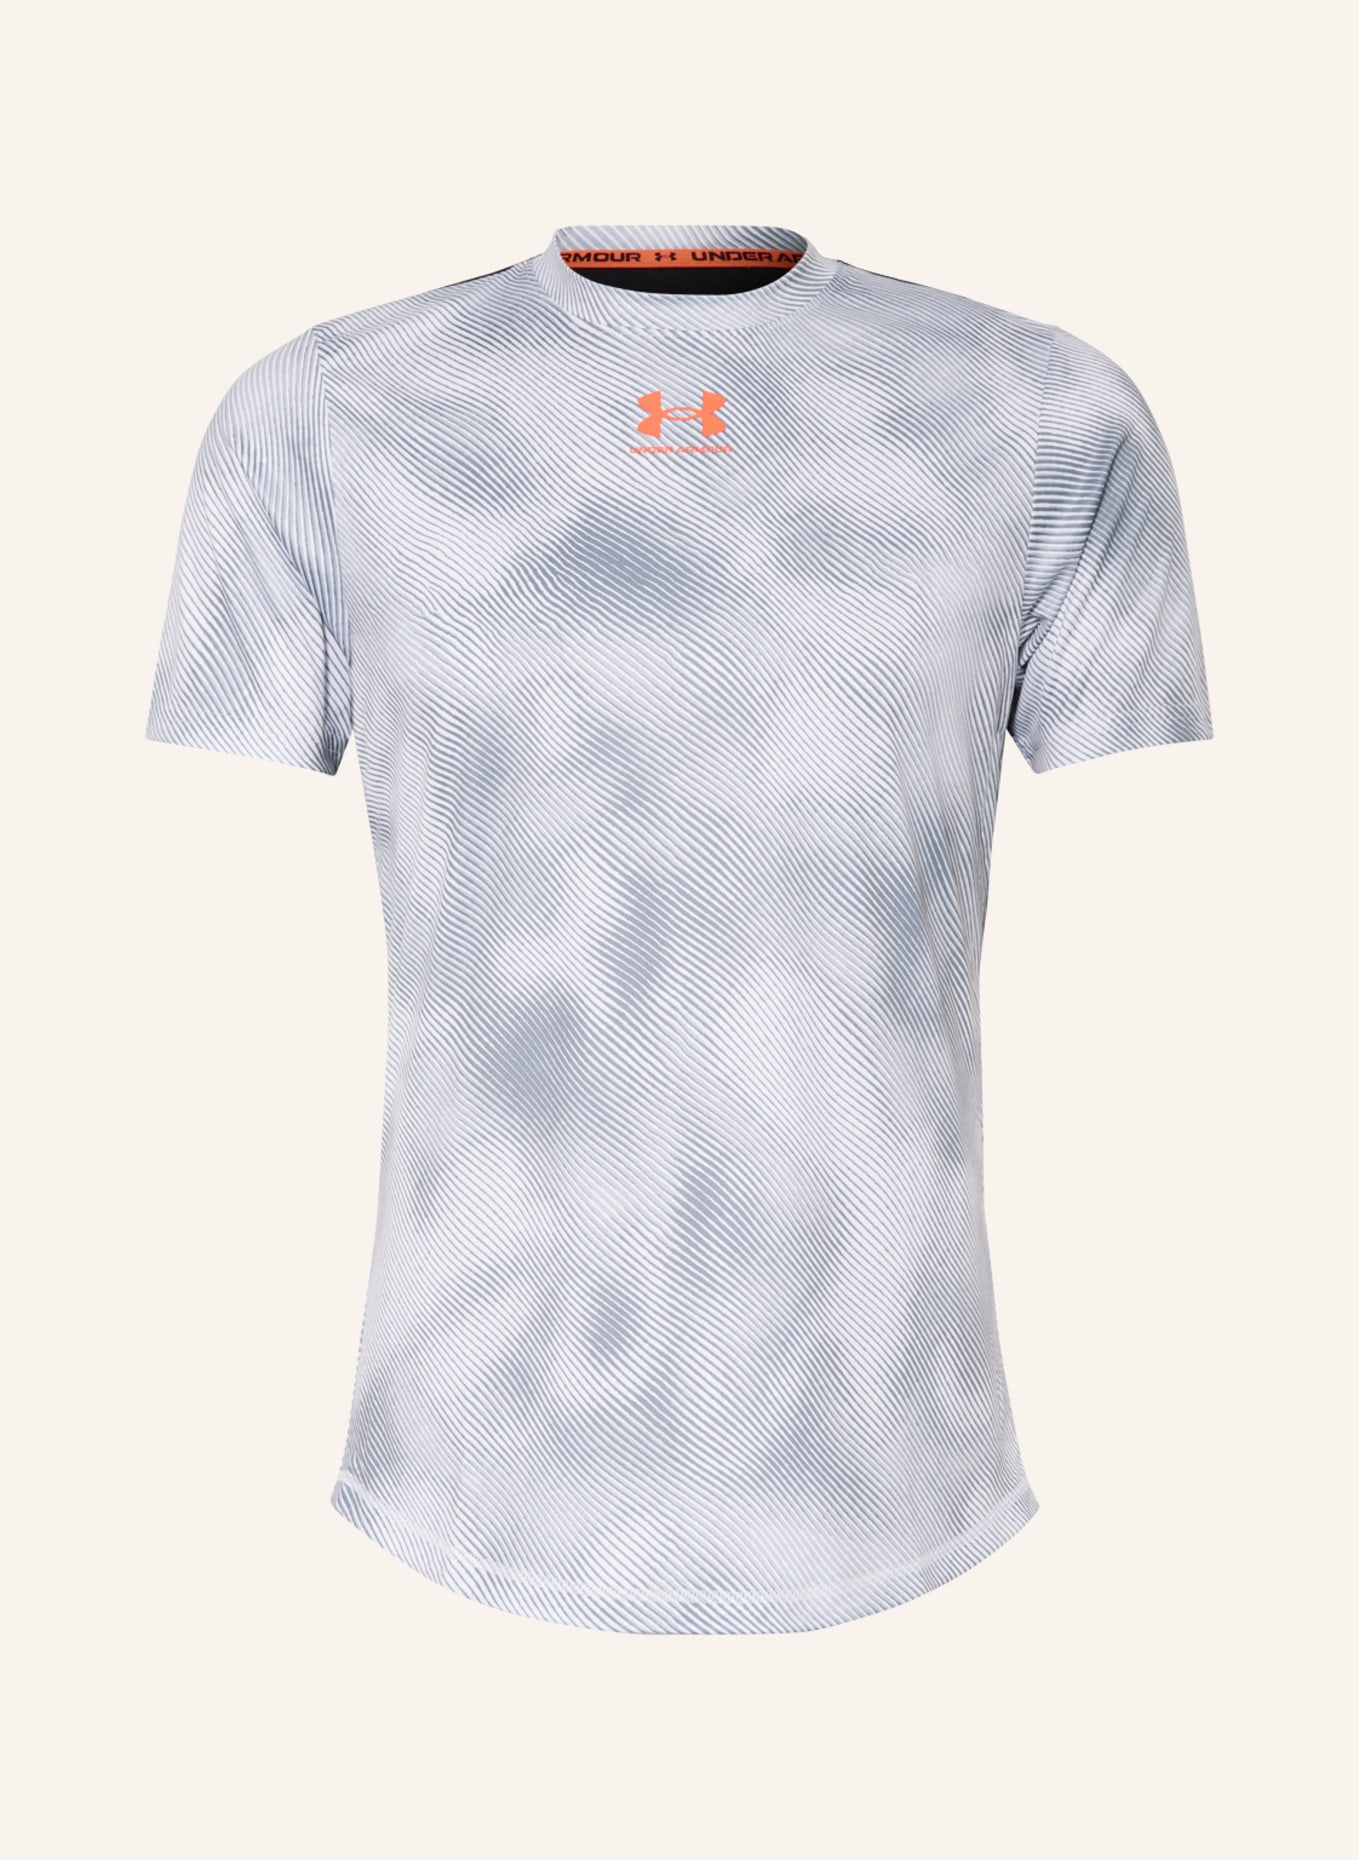 UNDER ARMOUR T-Shirt CHALLENGER PRO mit Mesh, Farbe: WEISS/ GRAU (Bild 1)